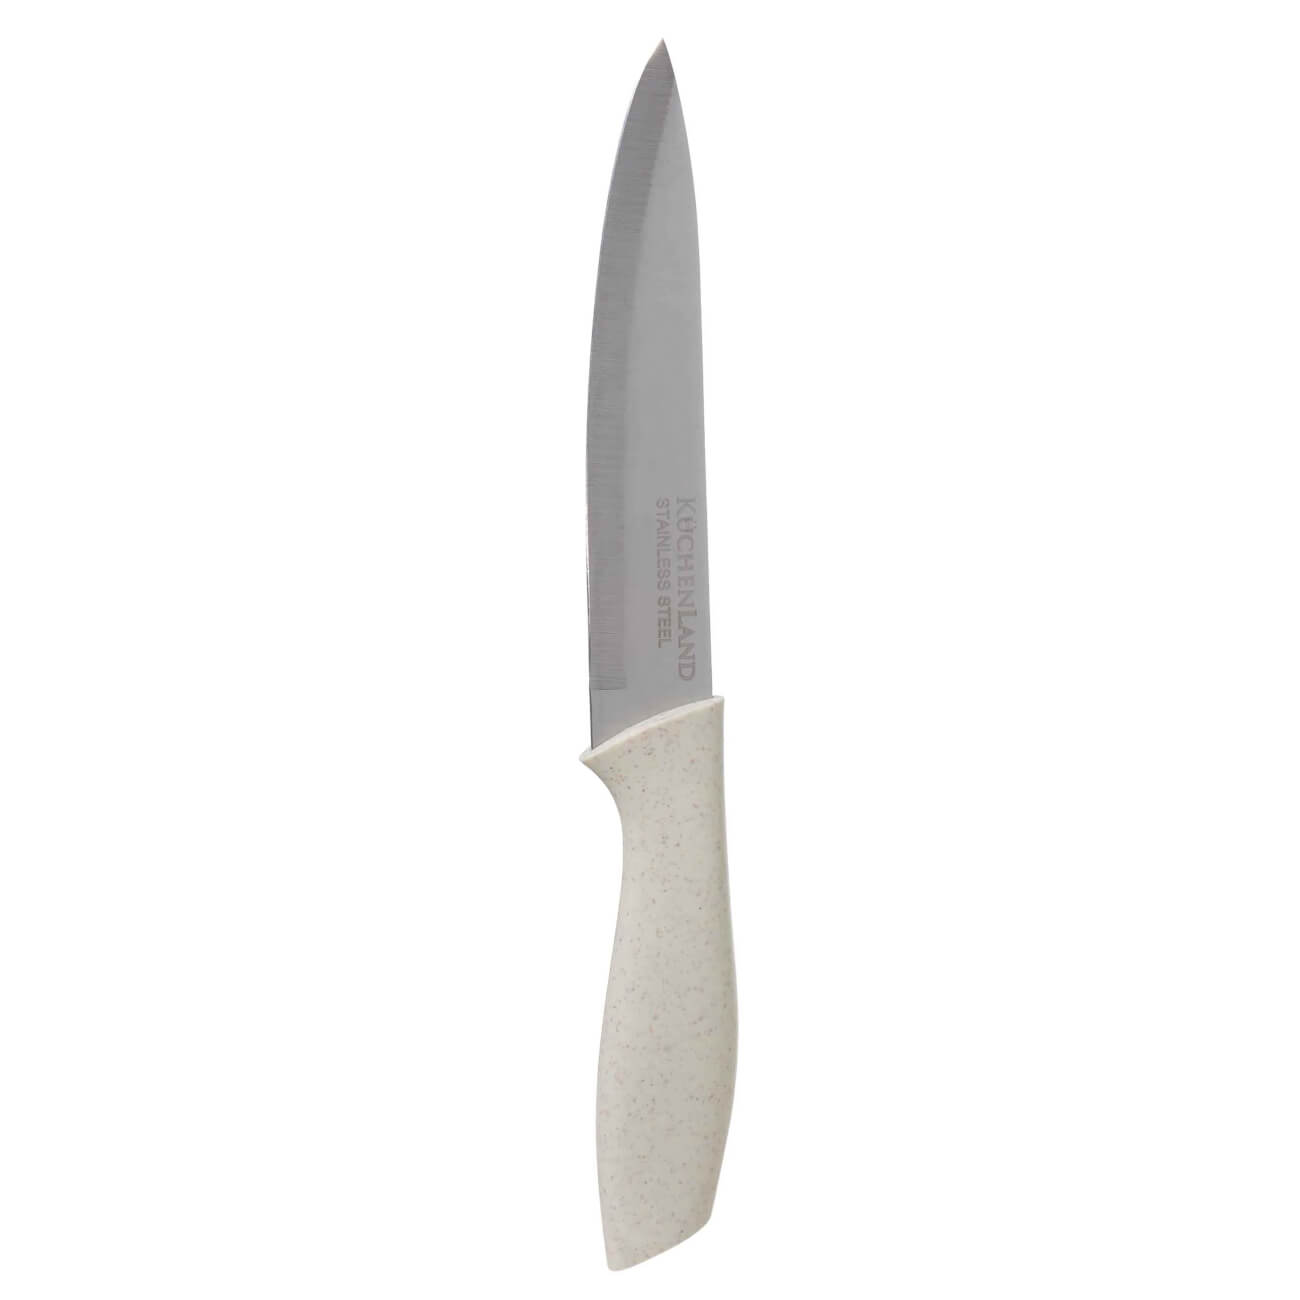 Нож для нарезки, 15 см, сталь/пластик, молочный, Speck-light kuchenland дуршлаг 22 см с двумя ручками сталь молочный soft